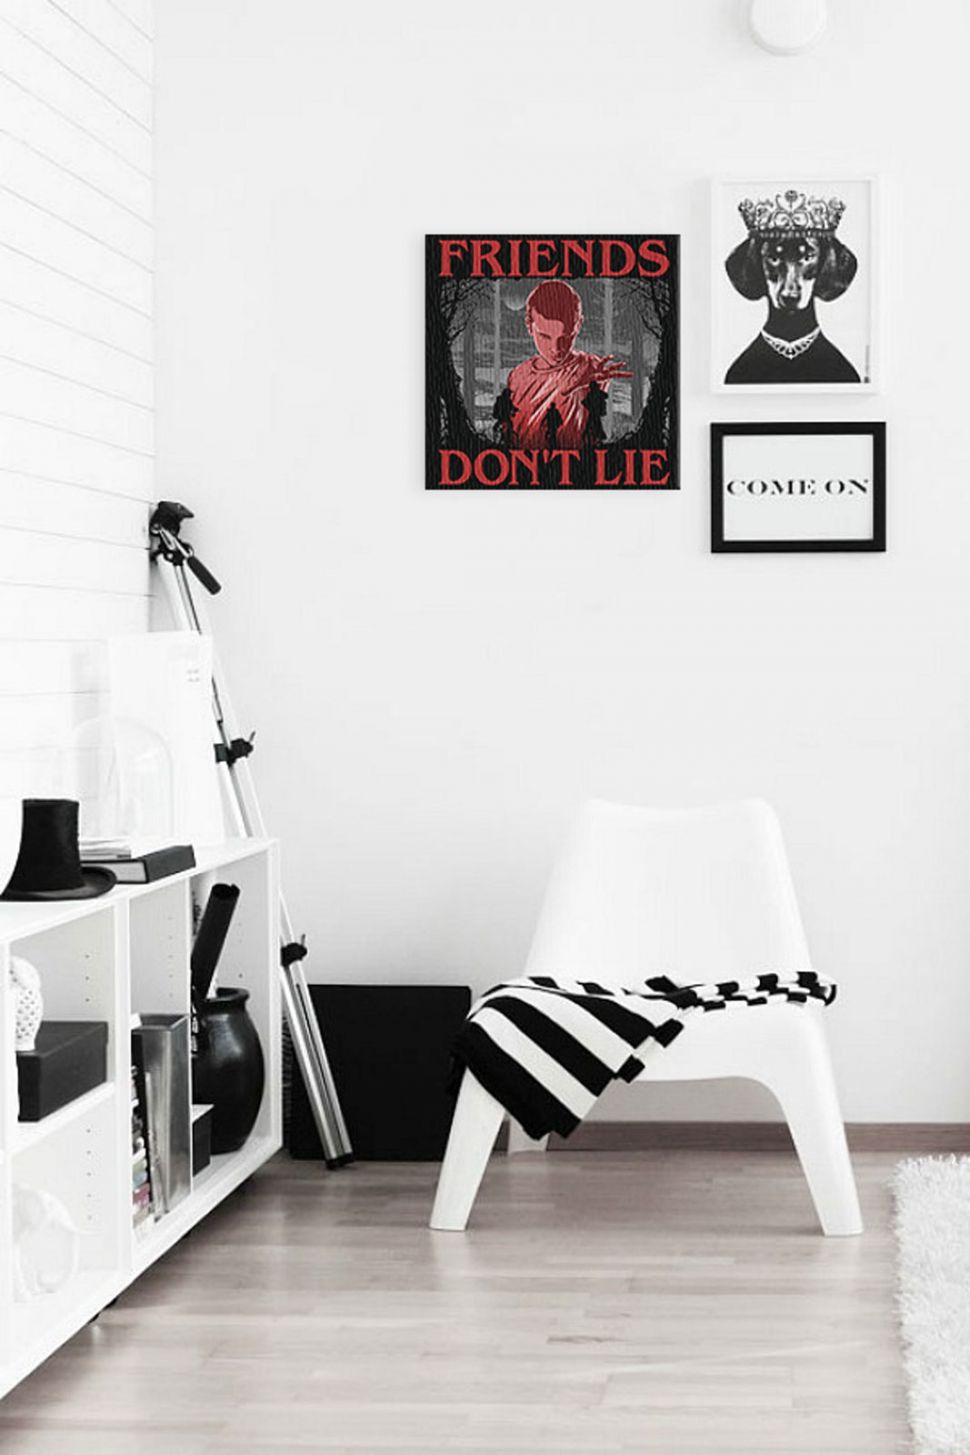 Obraz Friends Don't Lie z jedynastką z serialu Stranger Things zawieszony w pokoju nad białym krzesłem obok obraza z psem w koronie i napisem come on